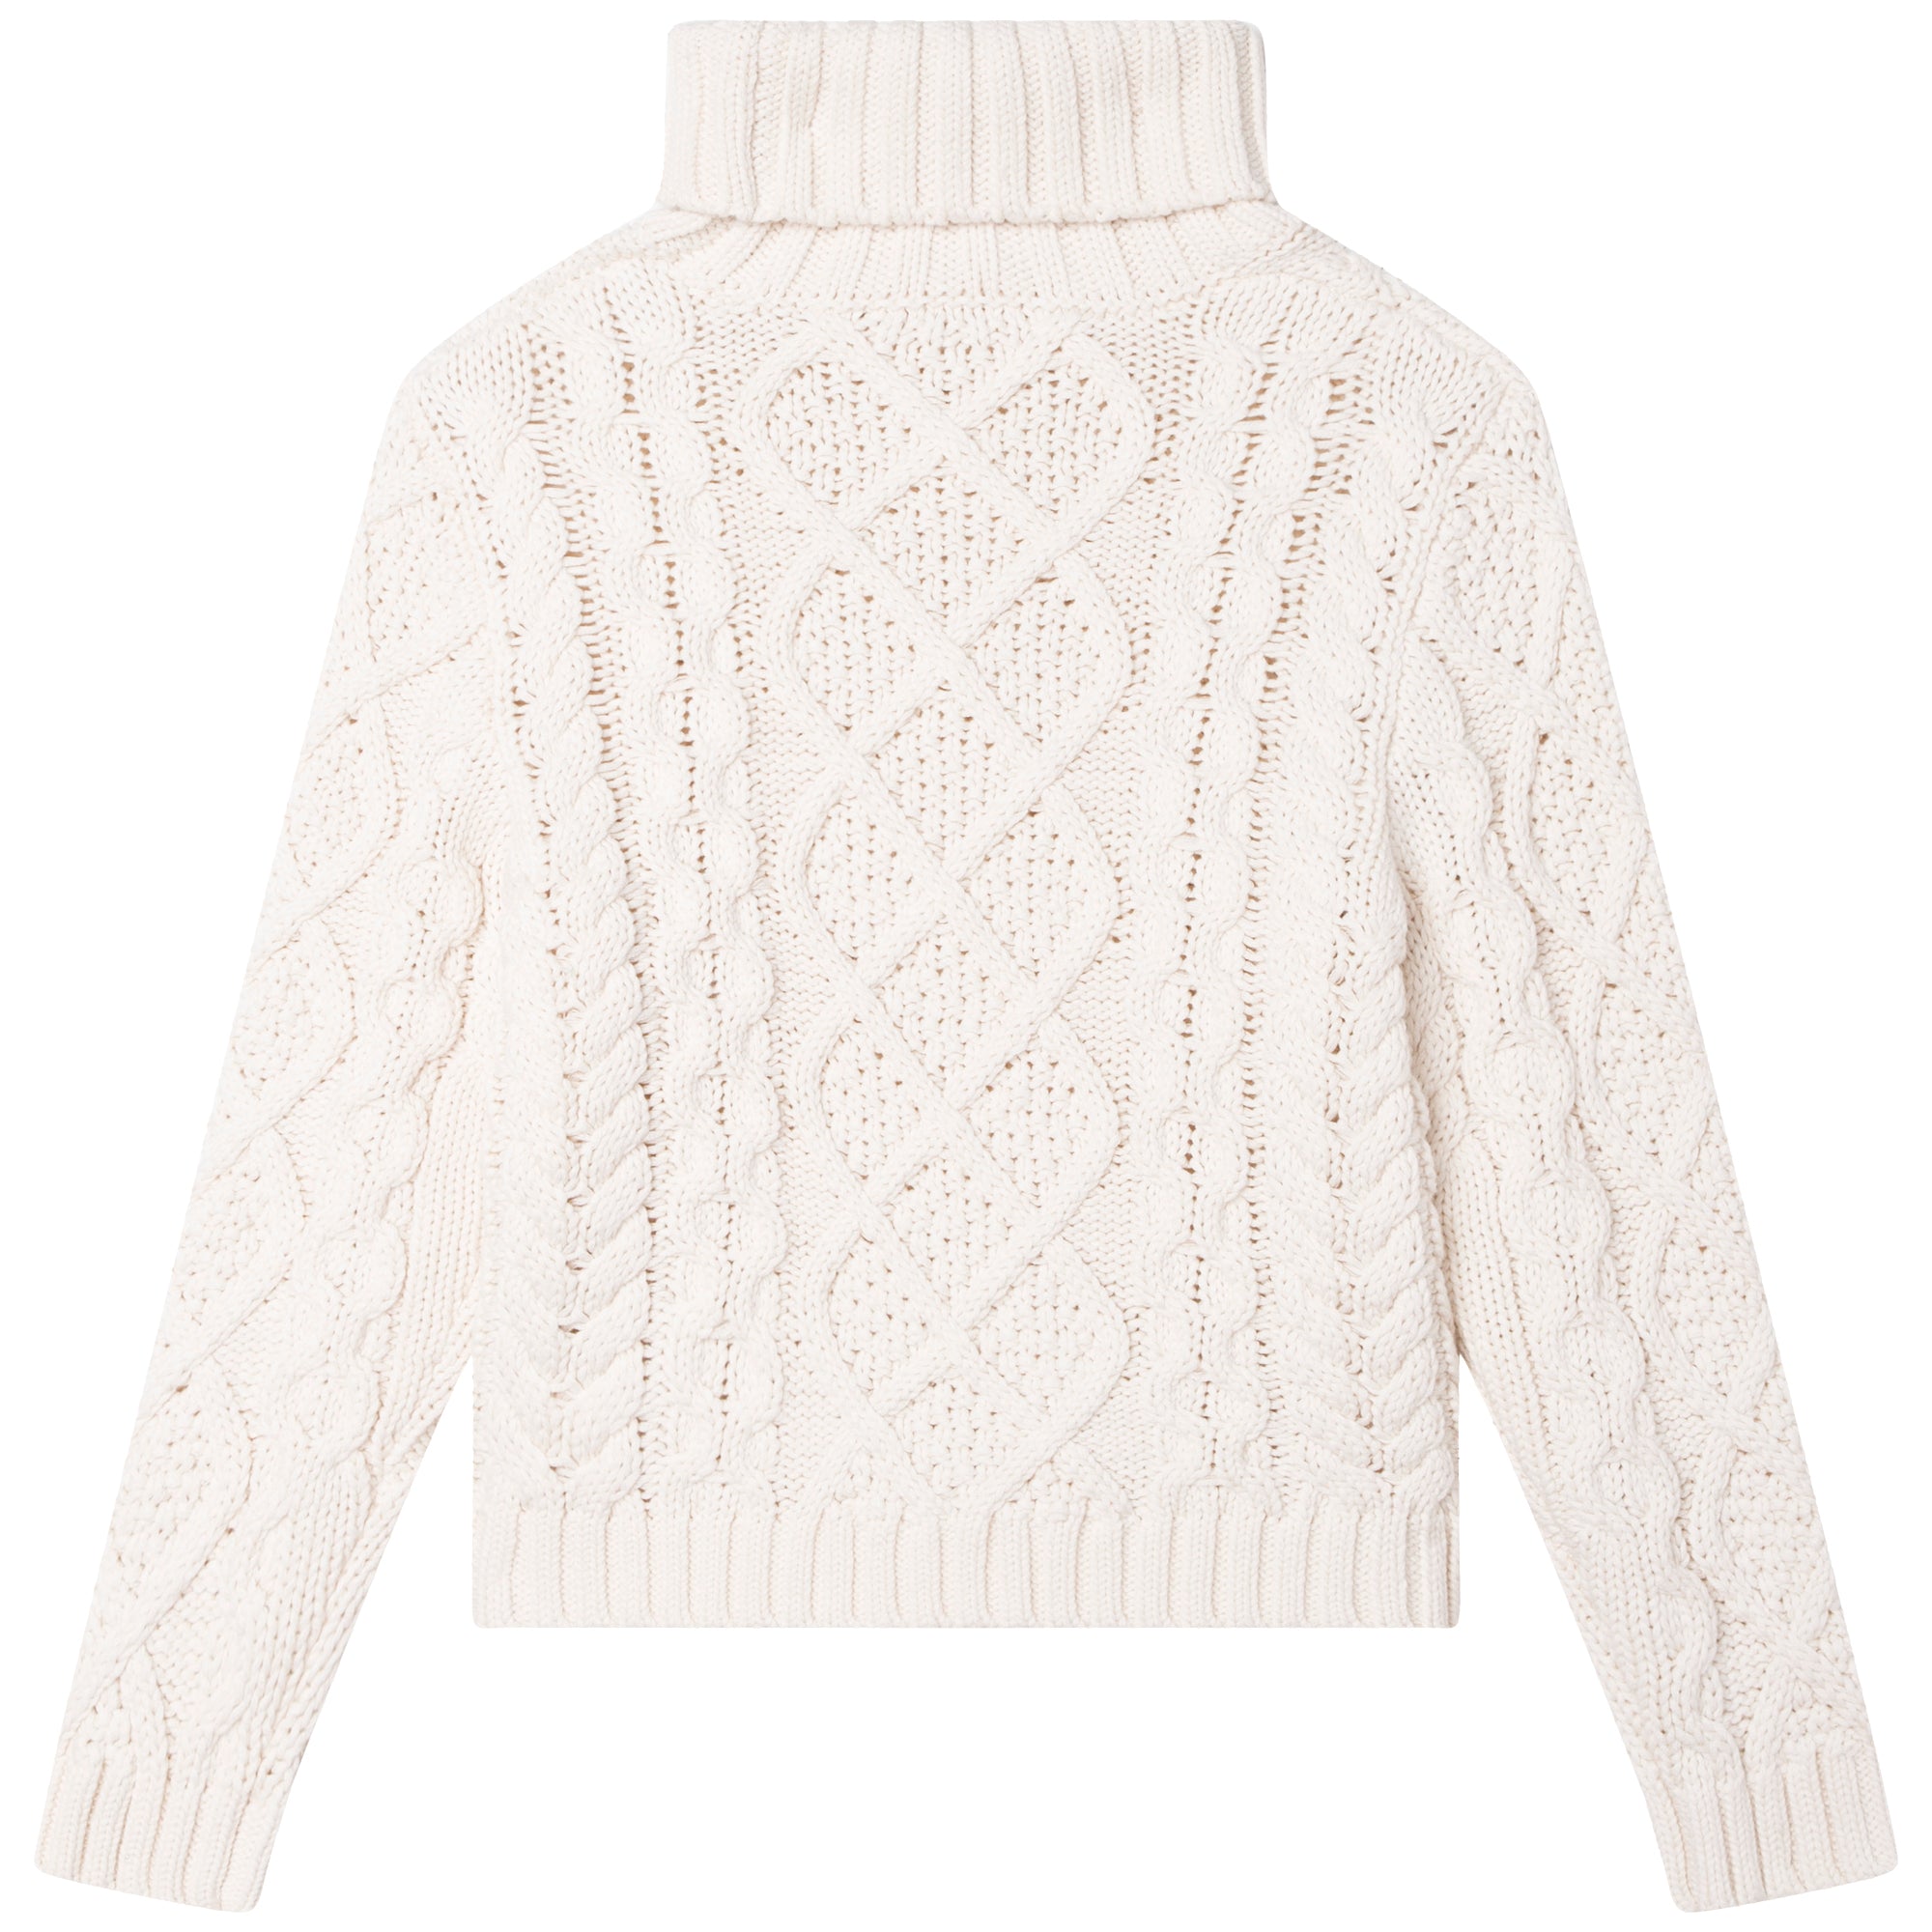 Girls Ivory Cotton Knit Sweater